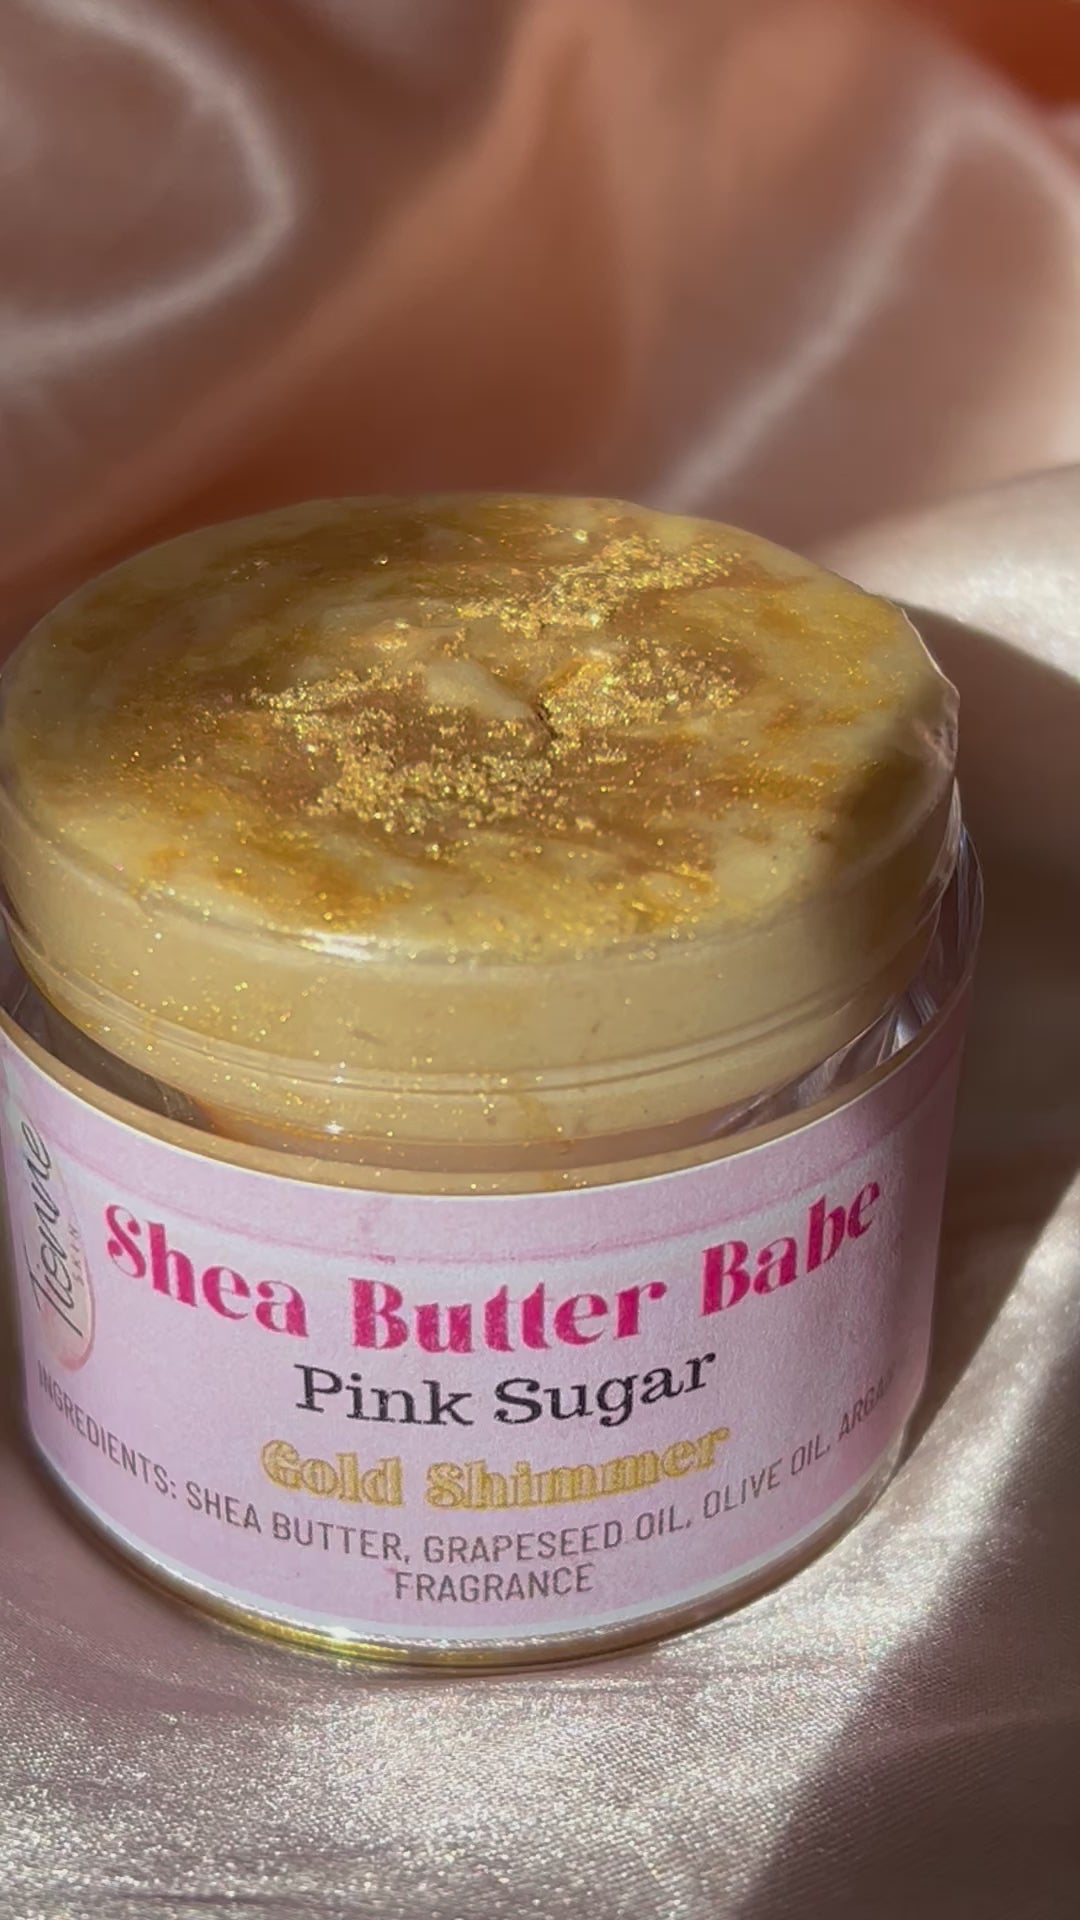 Pink Sugar Shea Butter Babe